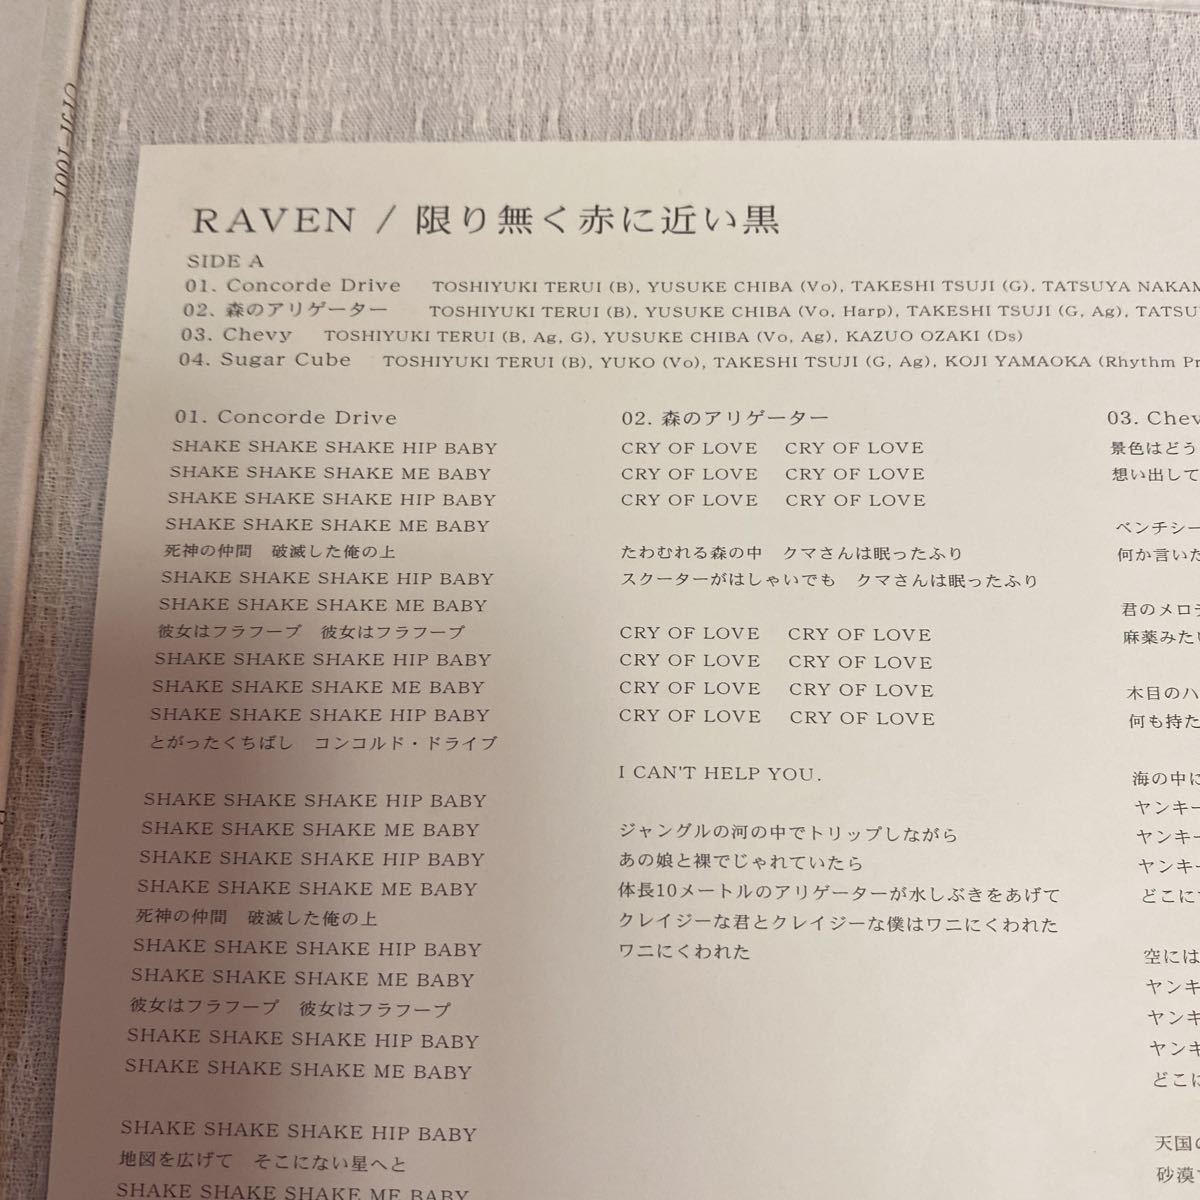 ヤフオク! - RAVEN 限り無く赤に近い黒 アナログレコード LP チ...